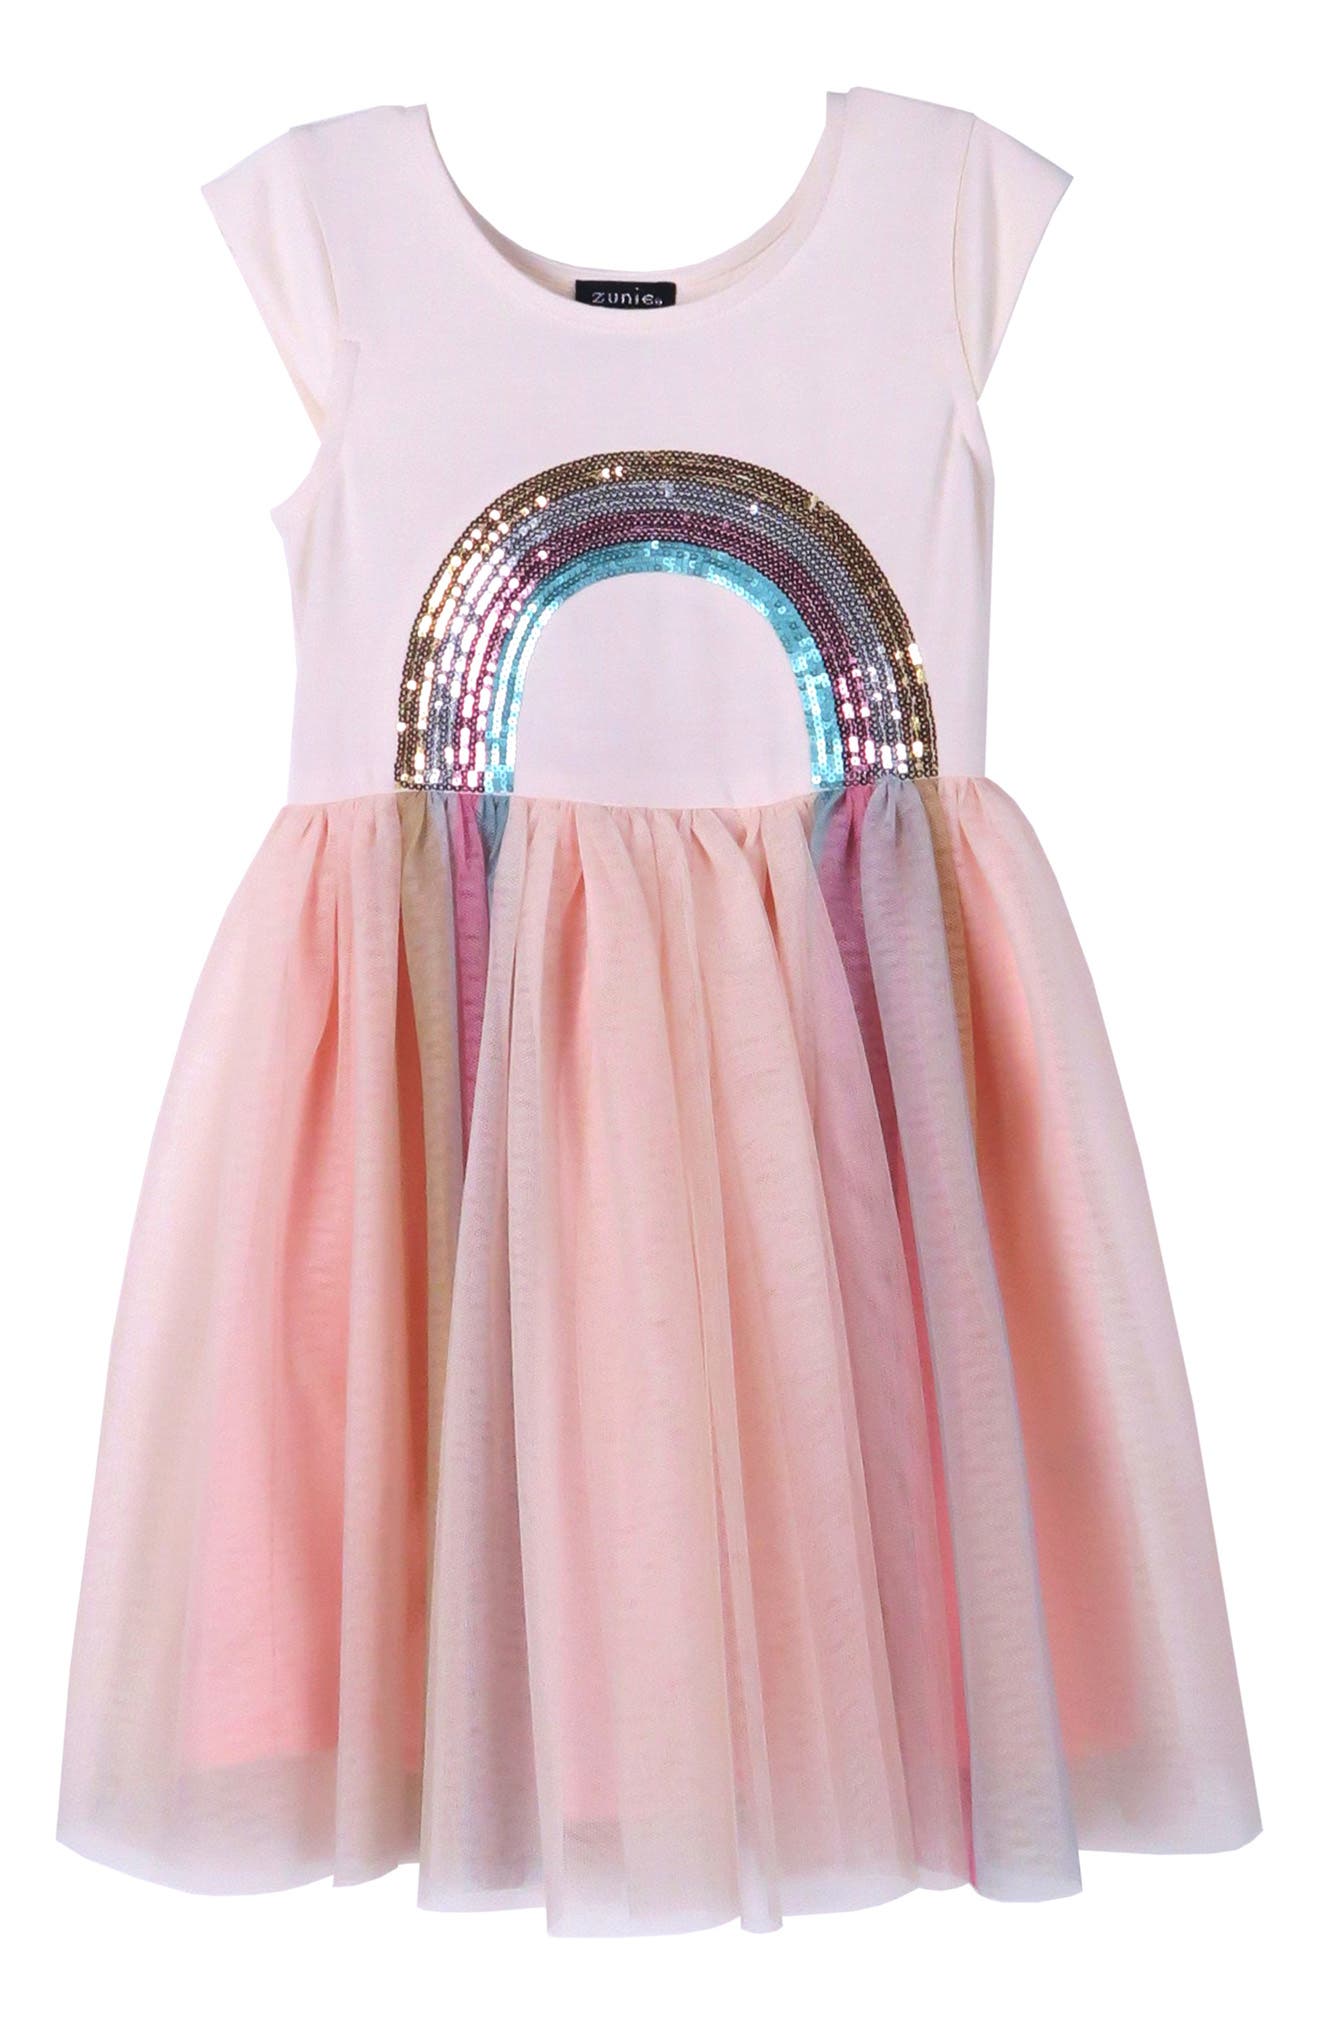 Платье-пачка с короткими рукавами и радужной вышивкой пайетками Zunie